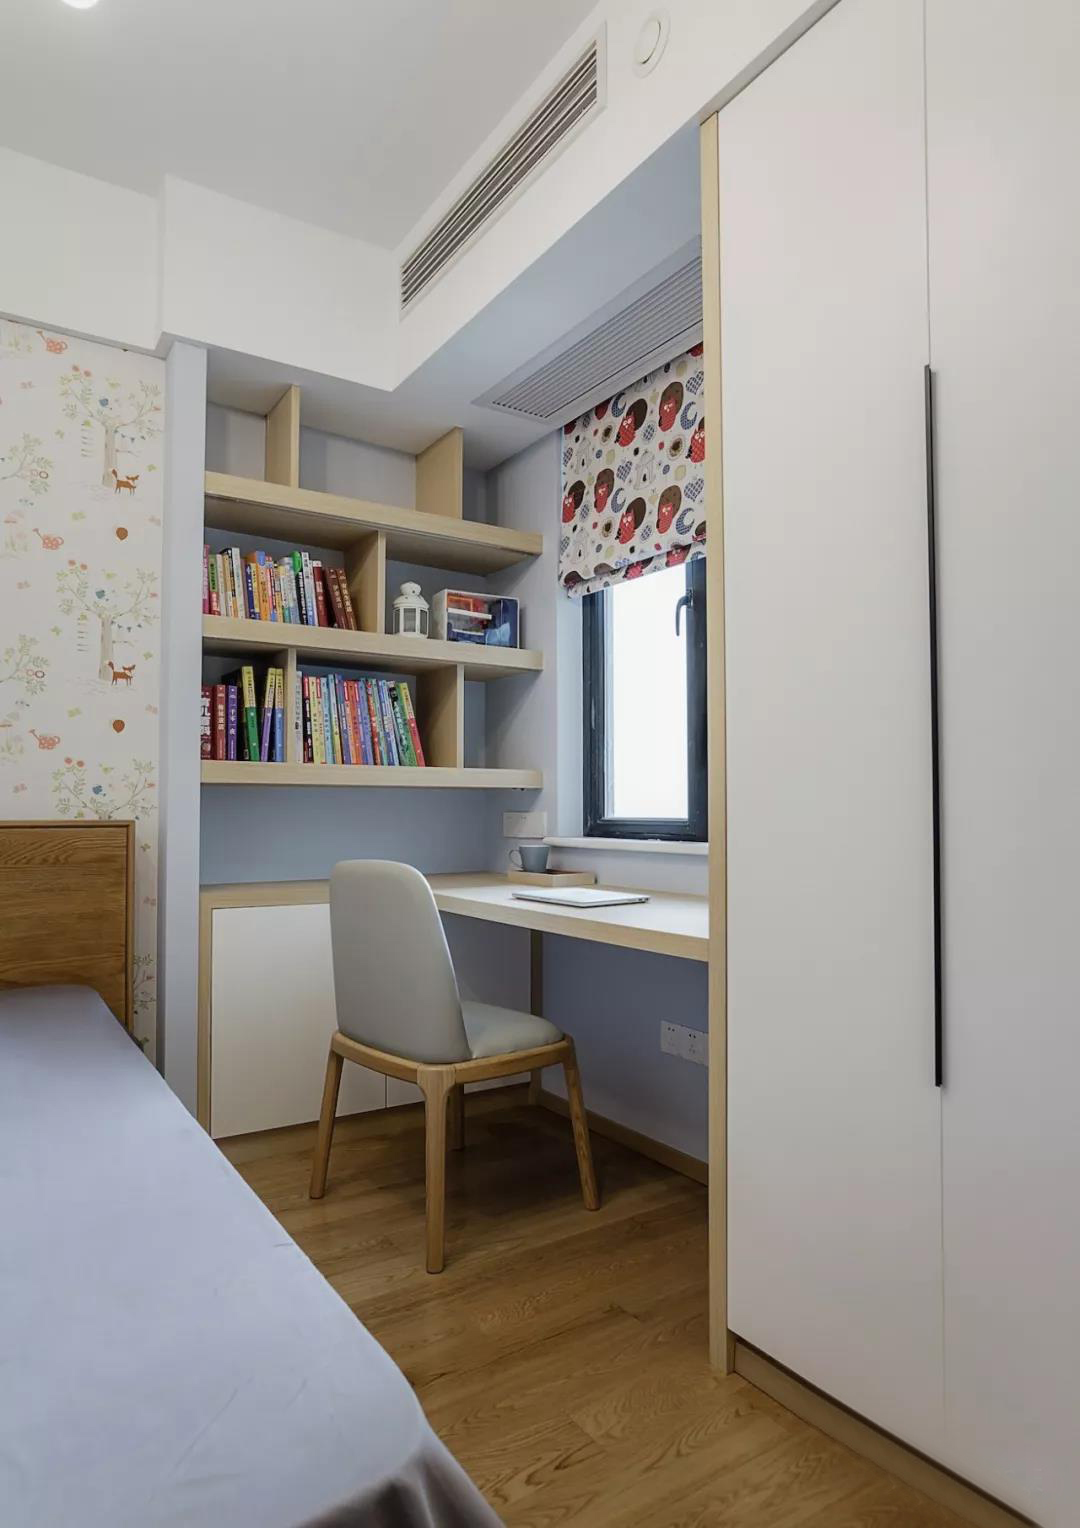 不费力气就能get的“角落书房” 让小户型也能实现书房梦 —— 上海觅谷空间设计工程有限公司